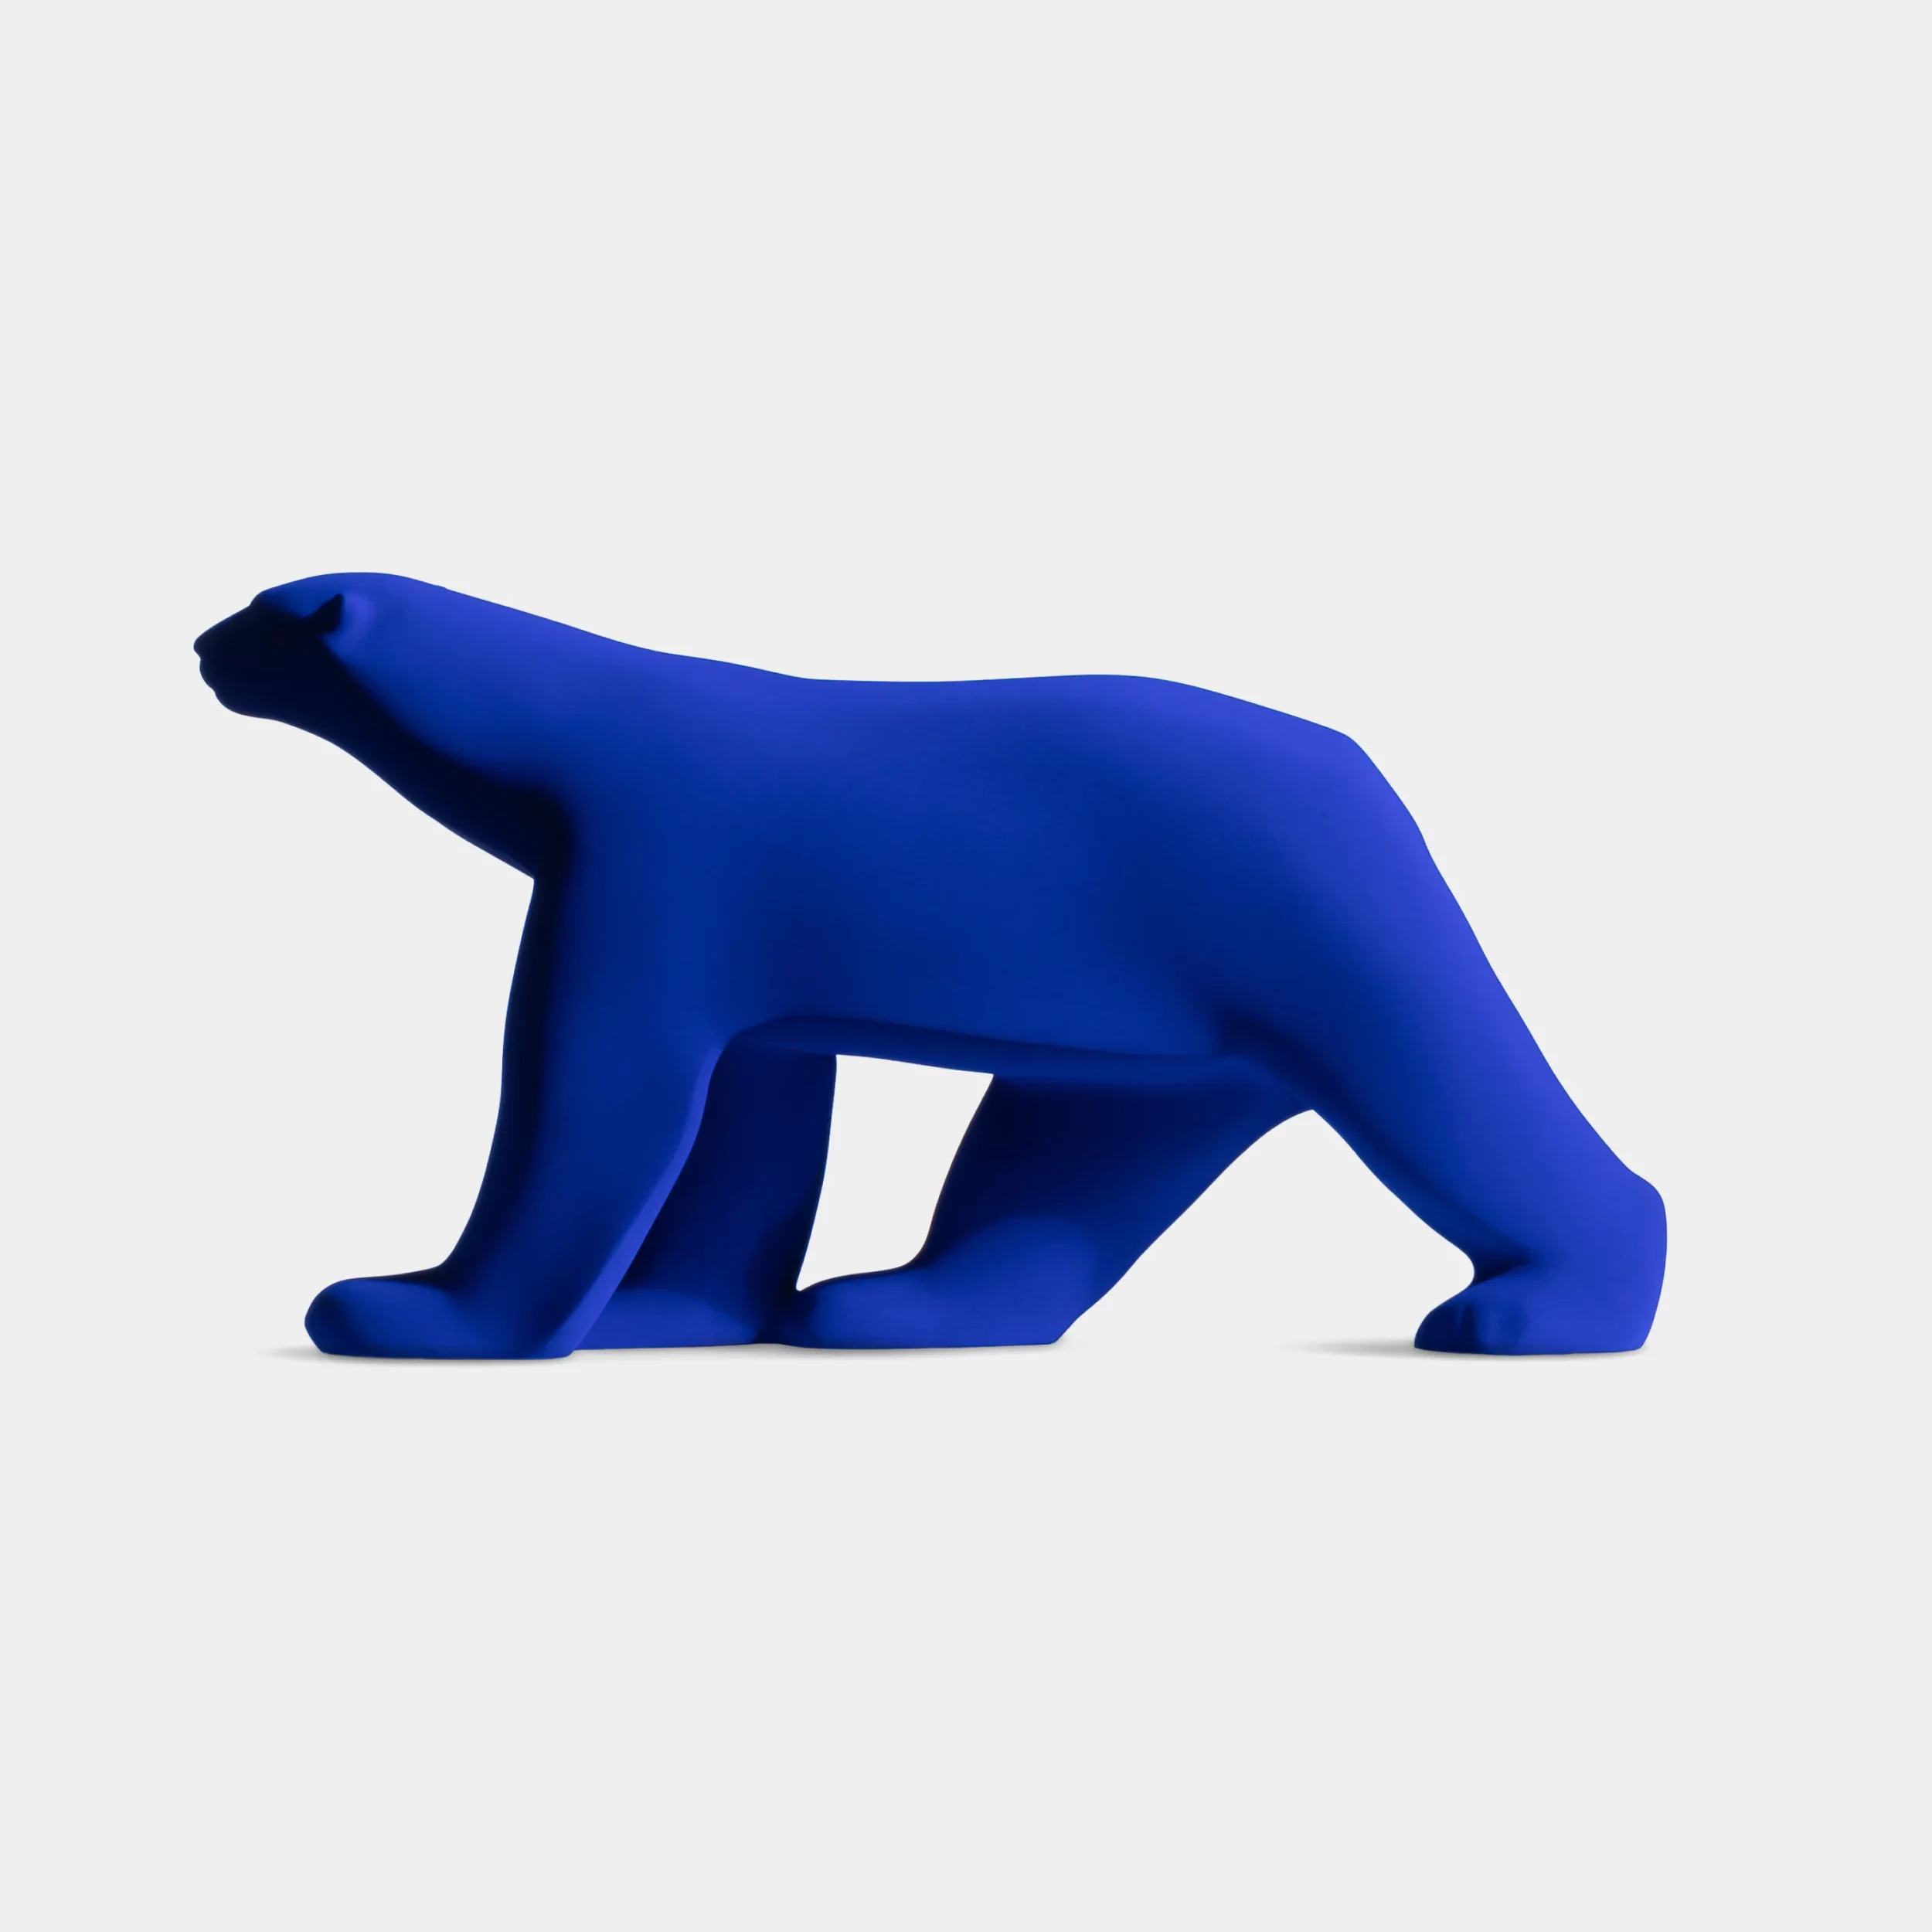 Edition rare et limitée de l'ours Pompon édition Yves Klein vue flan gauche